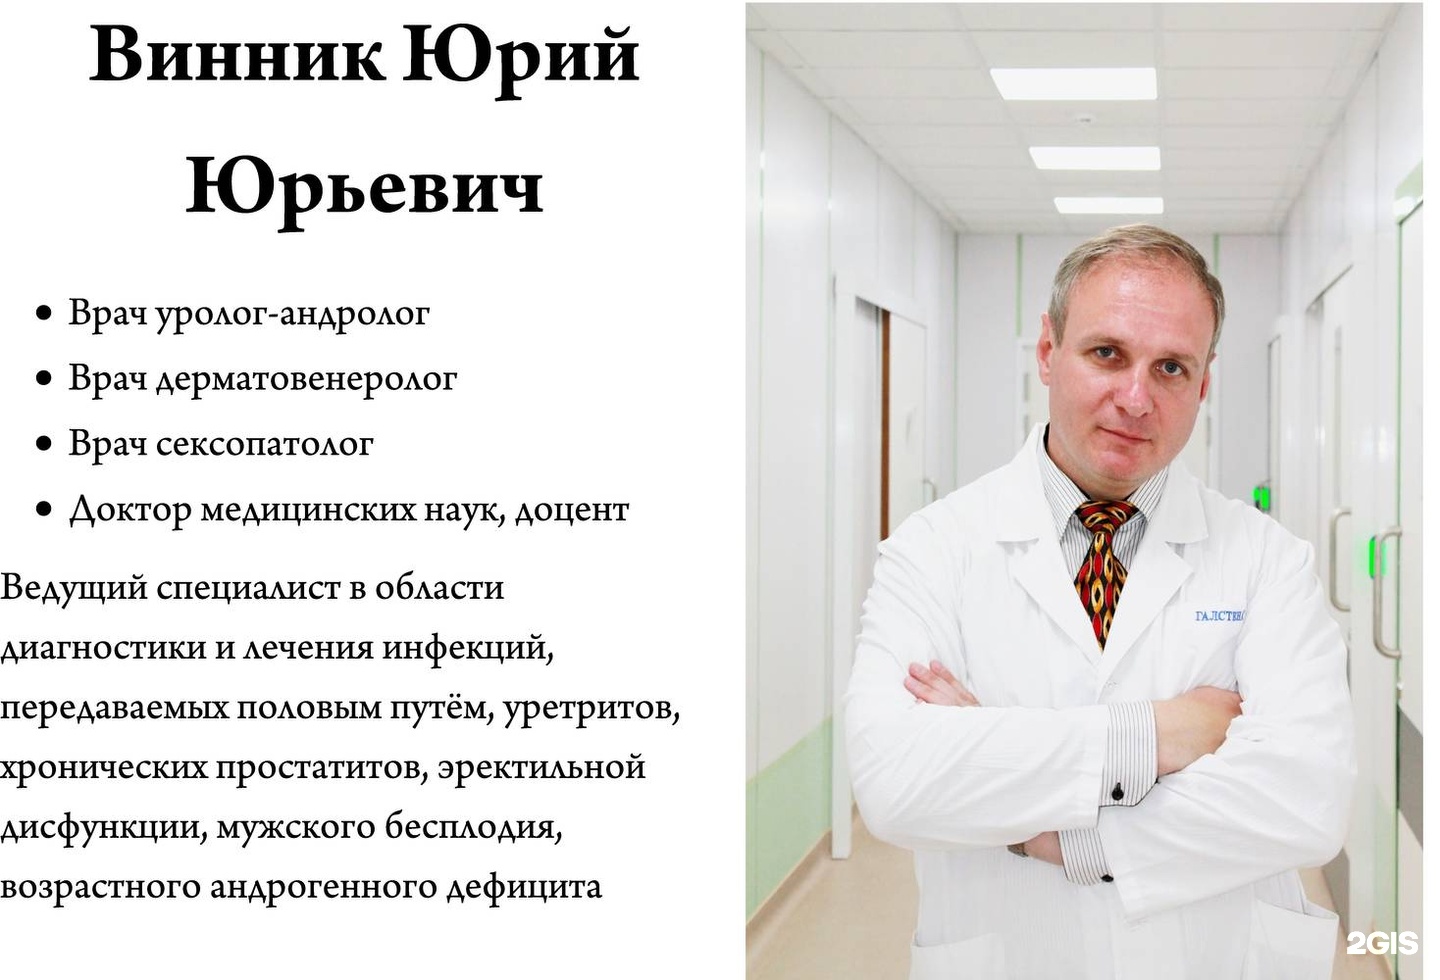 Пермь профессорская клиника специалисты